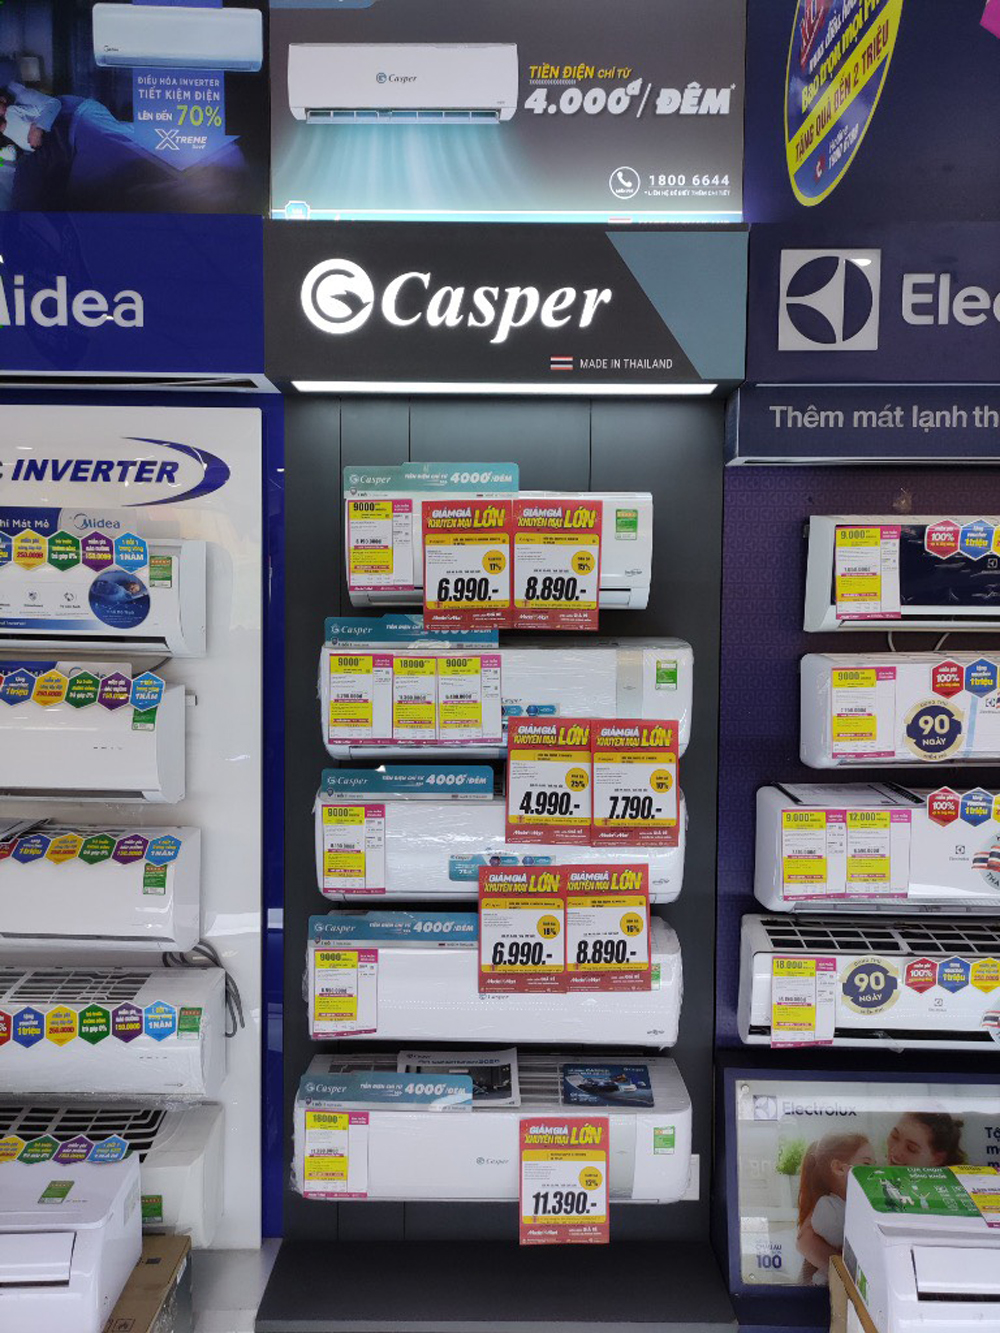 Nhắc đến Casper, người tiêu dùng ấn tượng nhất với điều hòa chính hãng xuất xứ từ Thái Lan với chính sách dịch vụ hẫu mãi ưu việt